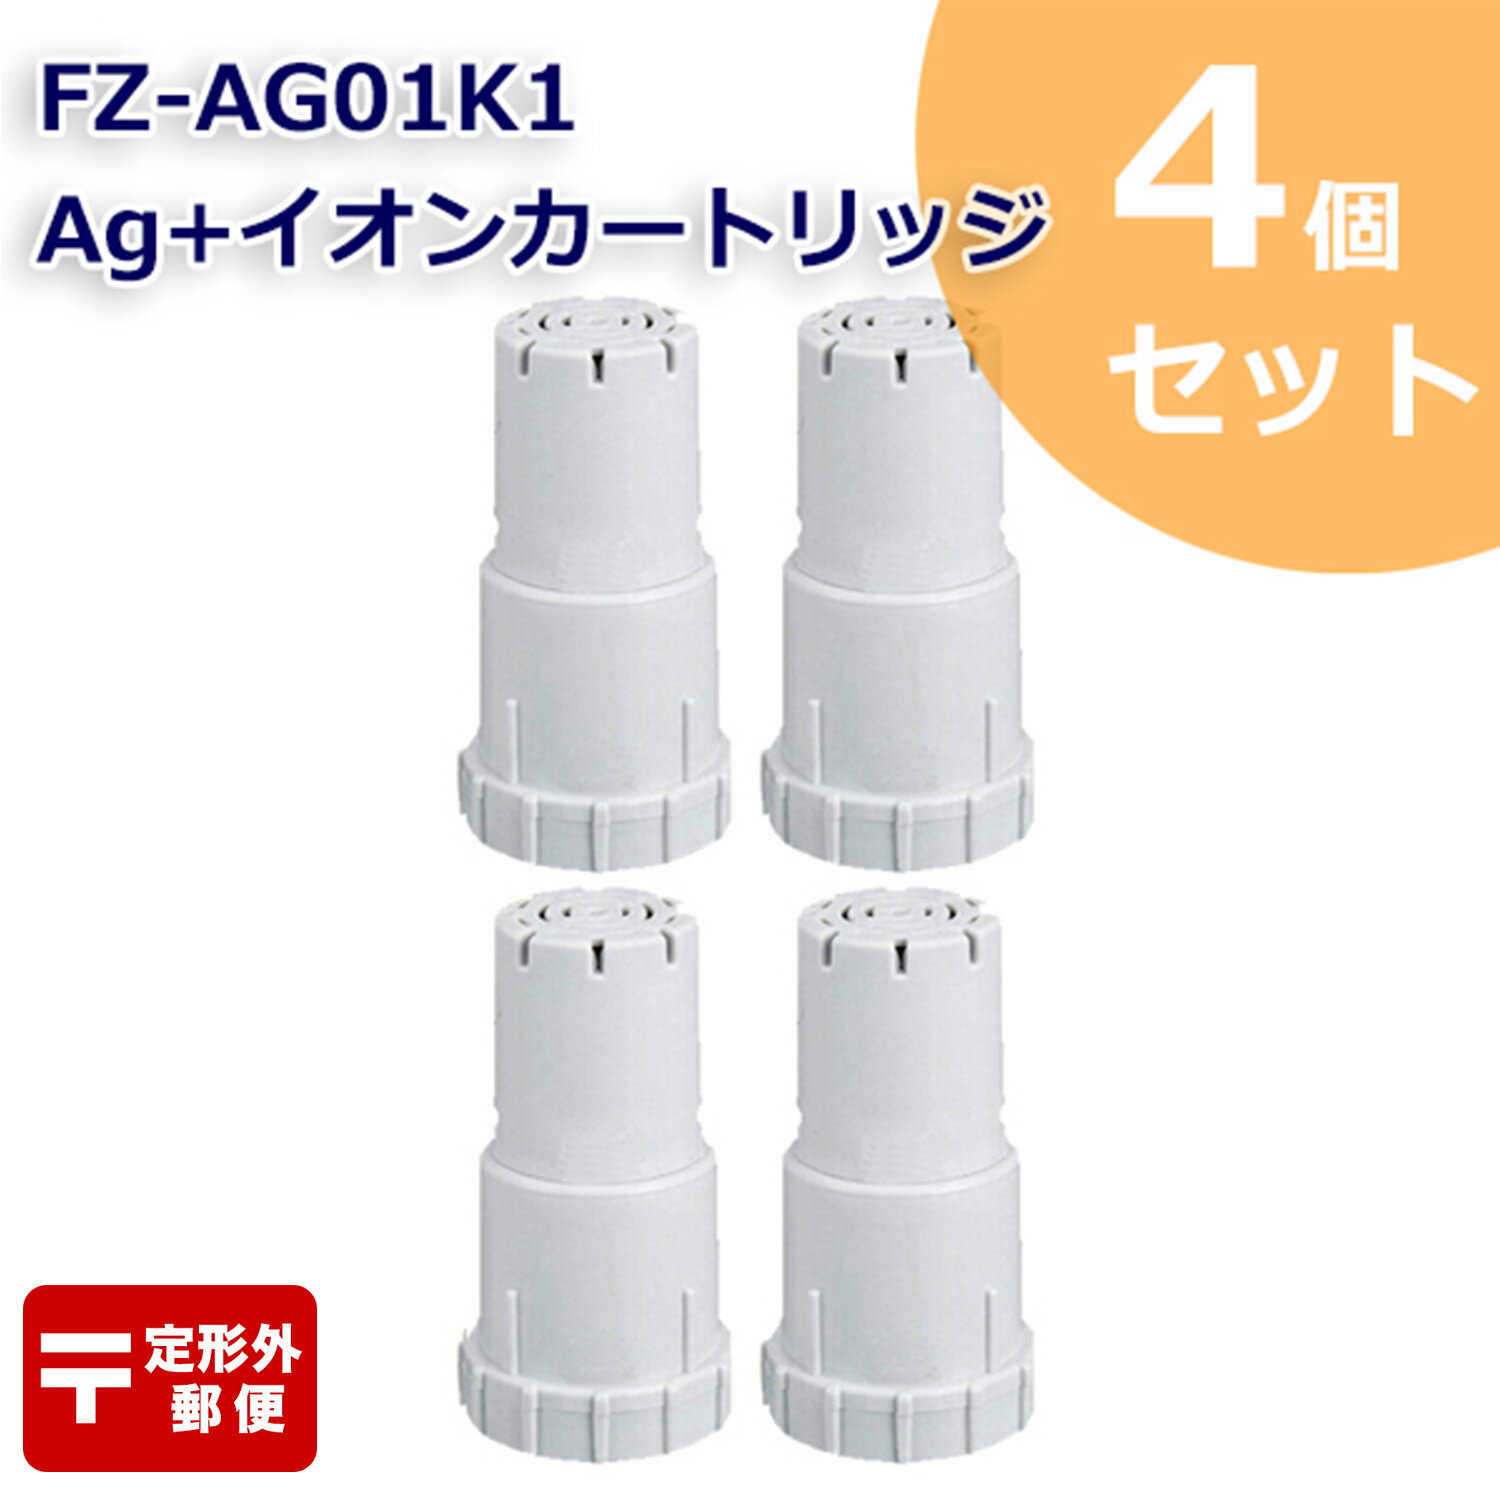 FZ-AG01K2 Ag+イオンカートリッジ FZ-AG01